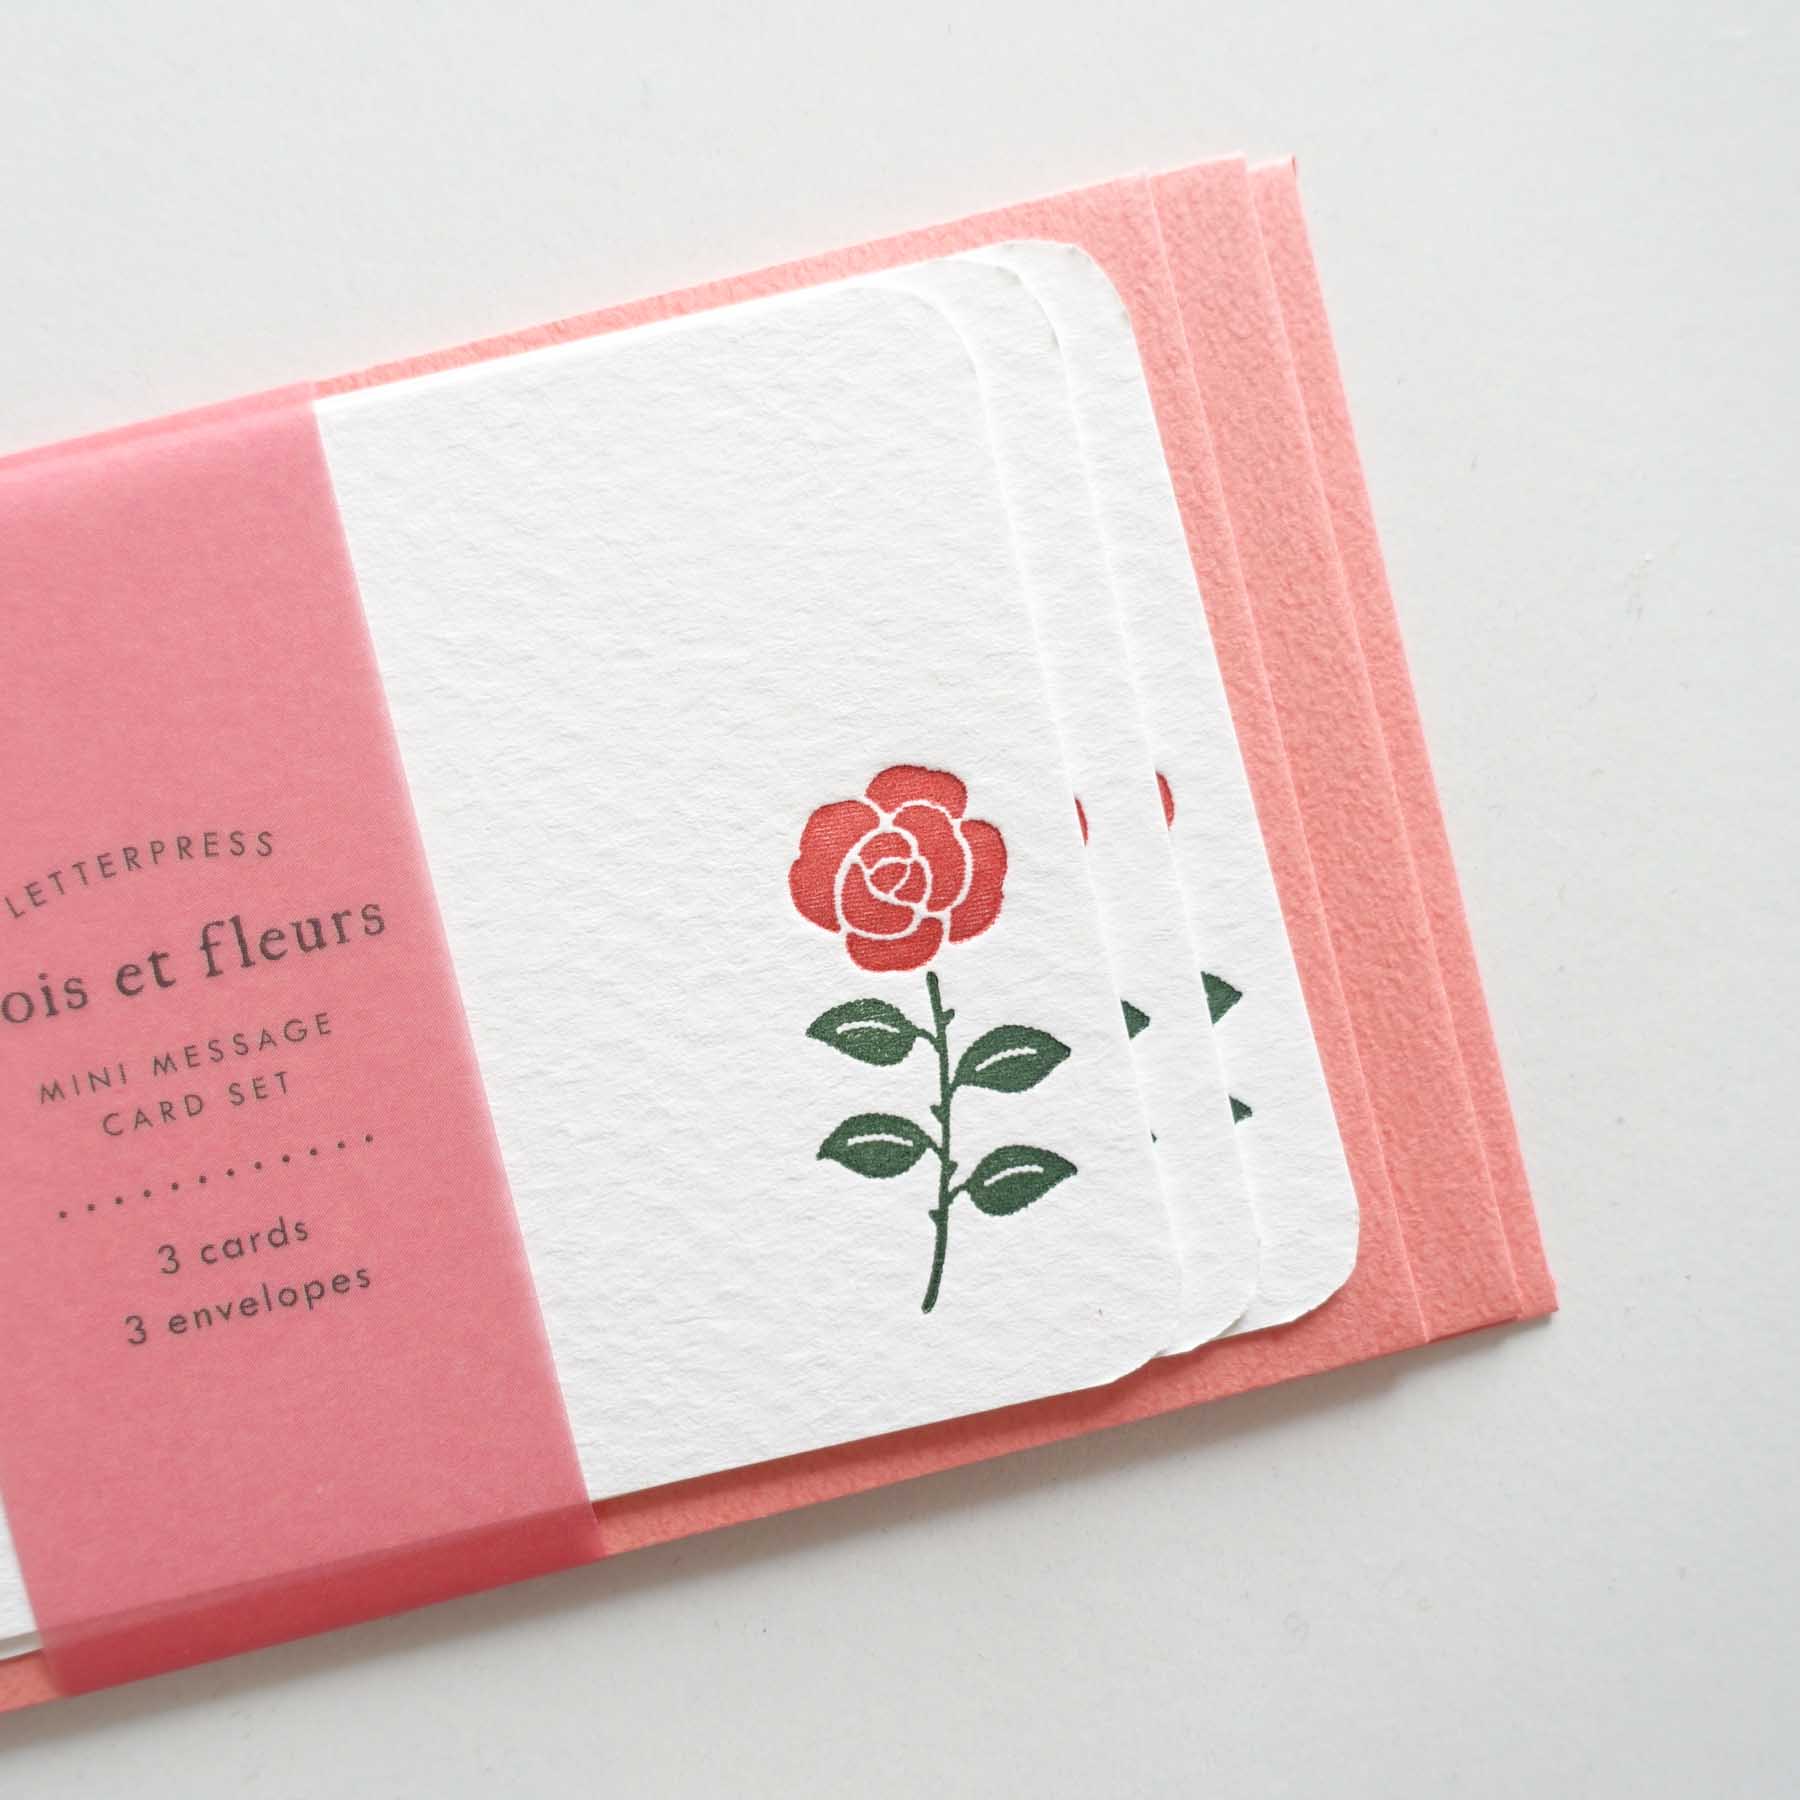 Red rose flower mini card envelope set letterpress australia